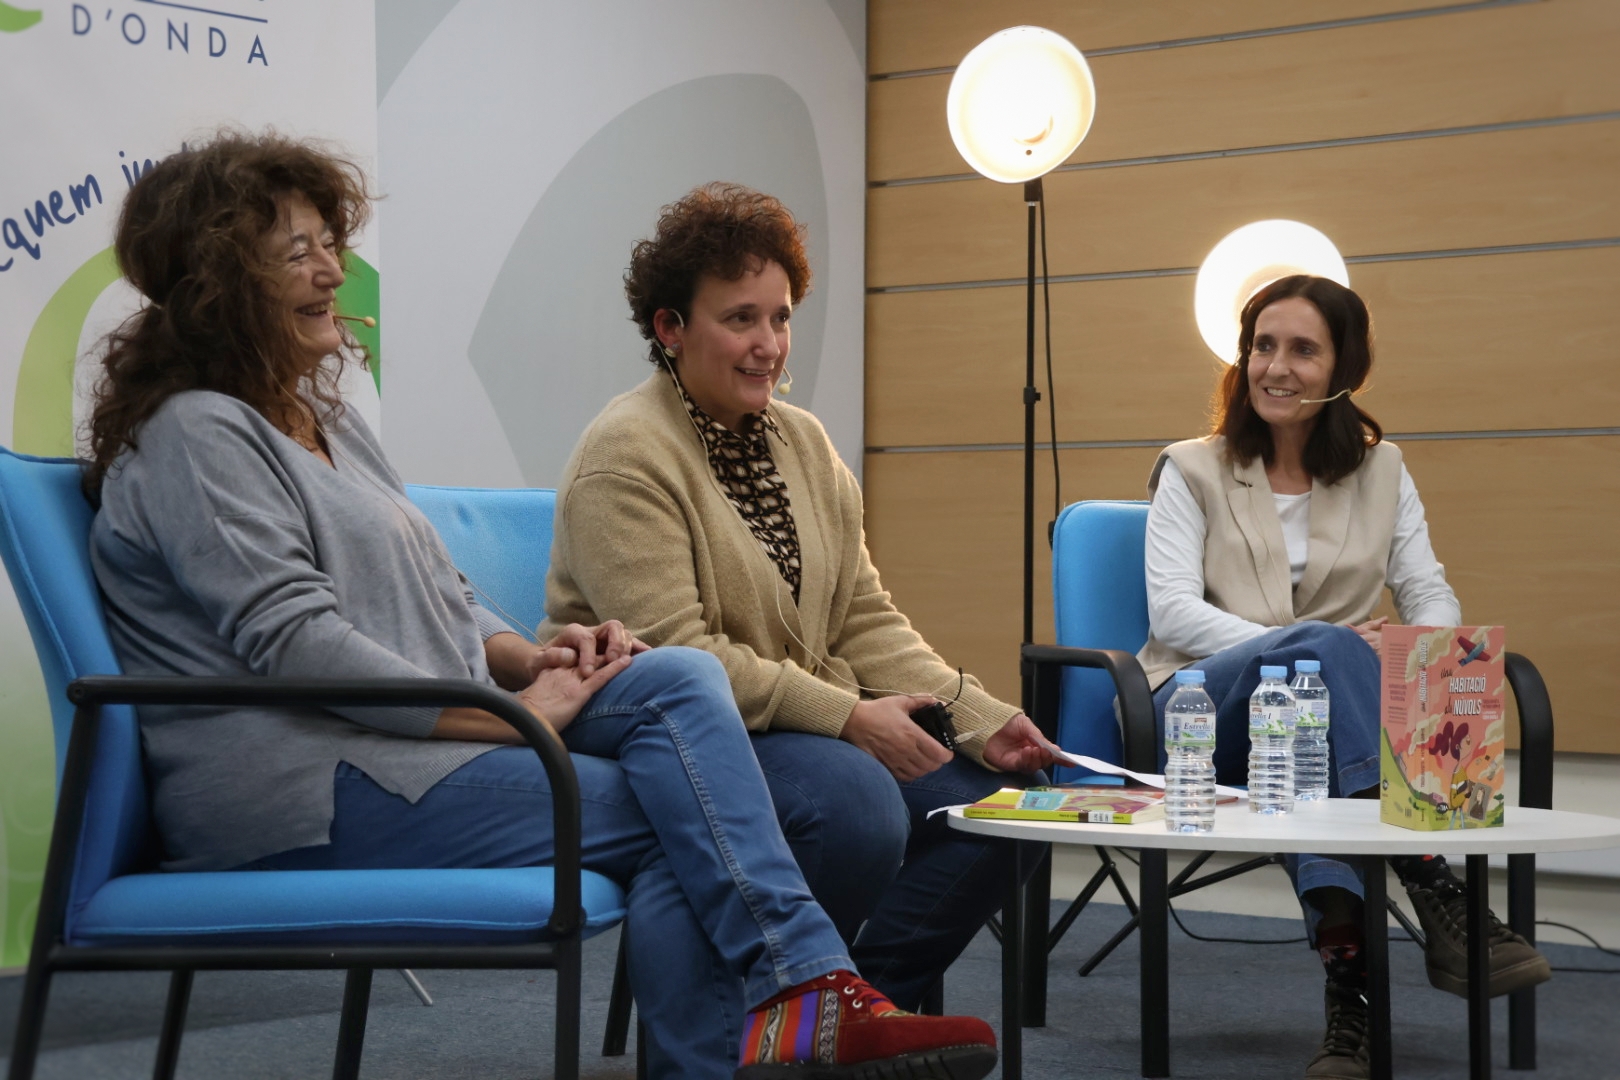 Spain: Patricia Campos Takes Readers on an Inspirational Flight with 'Una habitació als núvols' at 'Onda va de llibres'"